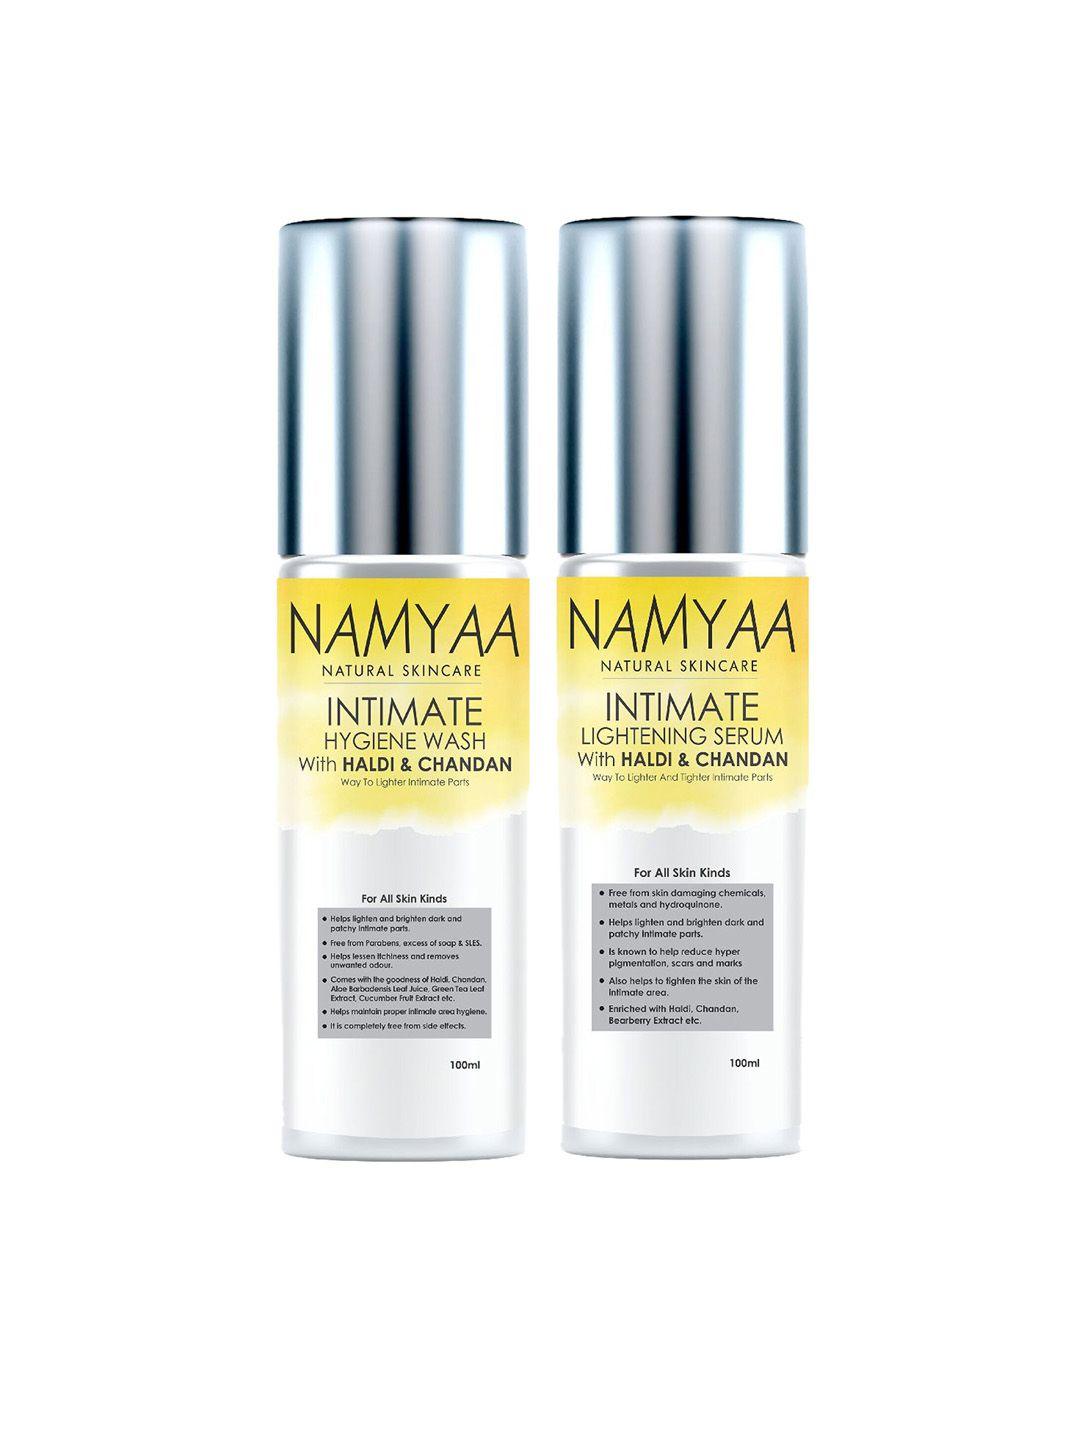 namyaa-pack-of-haldi-chandan-intimate-whitening-serum-and-wash-100-ml-each